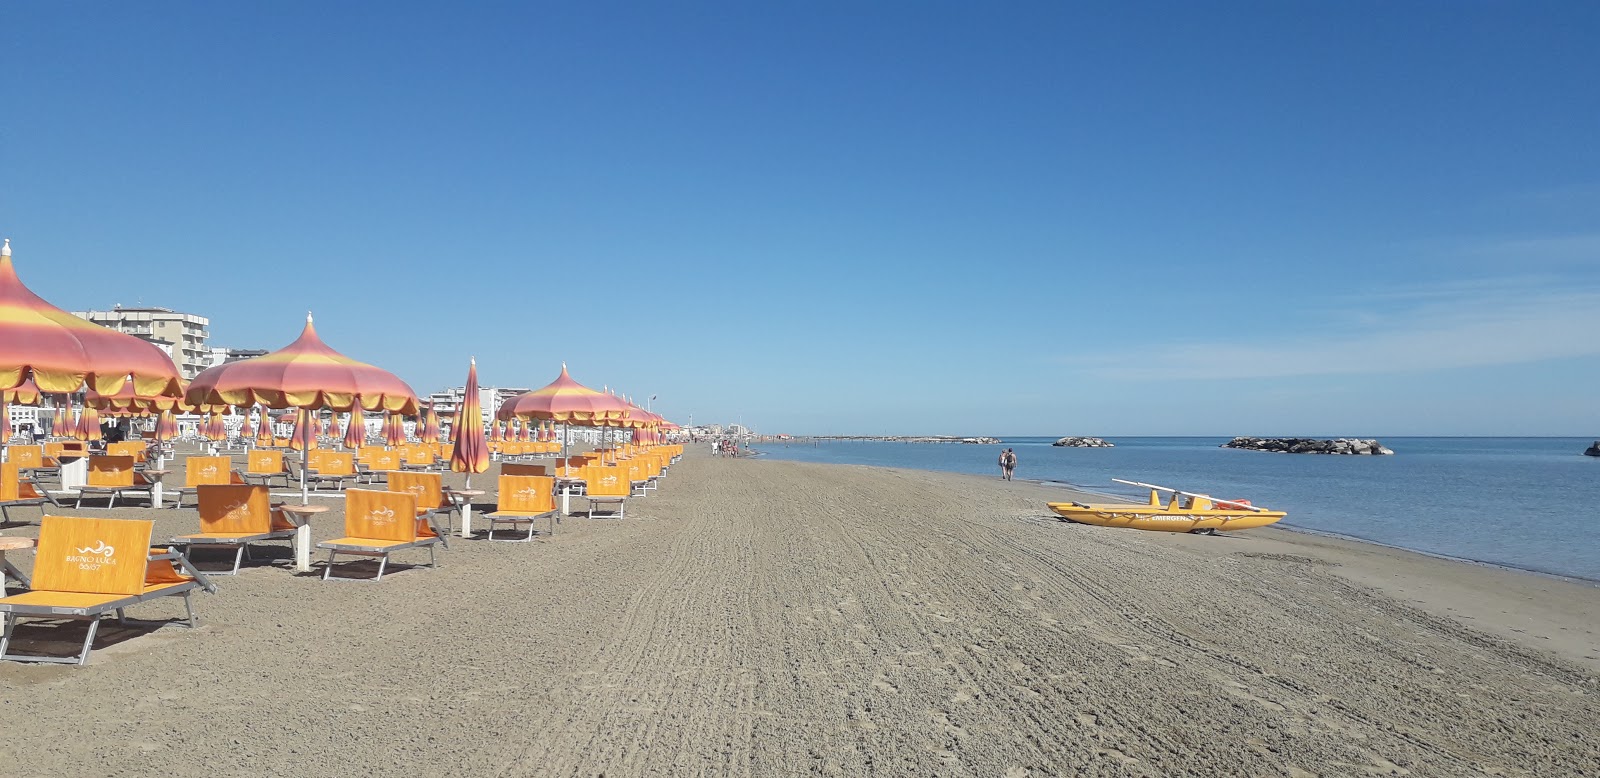 Photo de Torre pedrera beach avec sable fin et lumineux de surface